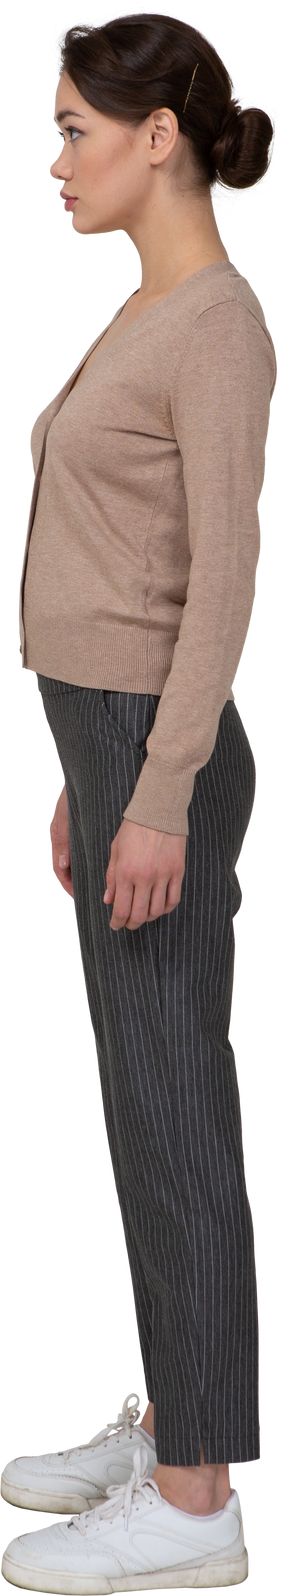 Vista lateral de una señorita parada quieta en jersey y pantalones mirando a un lado